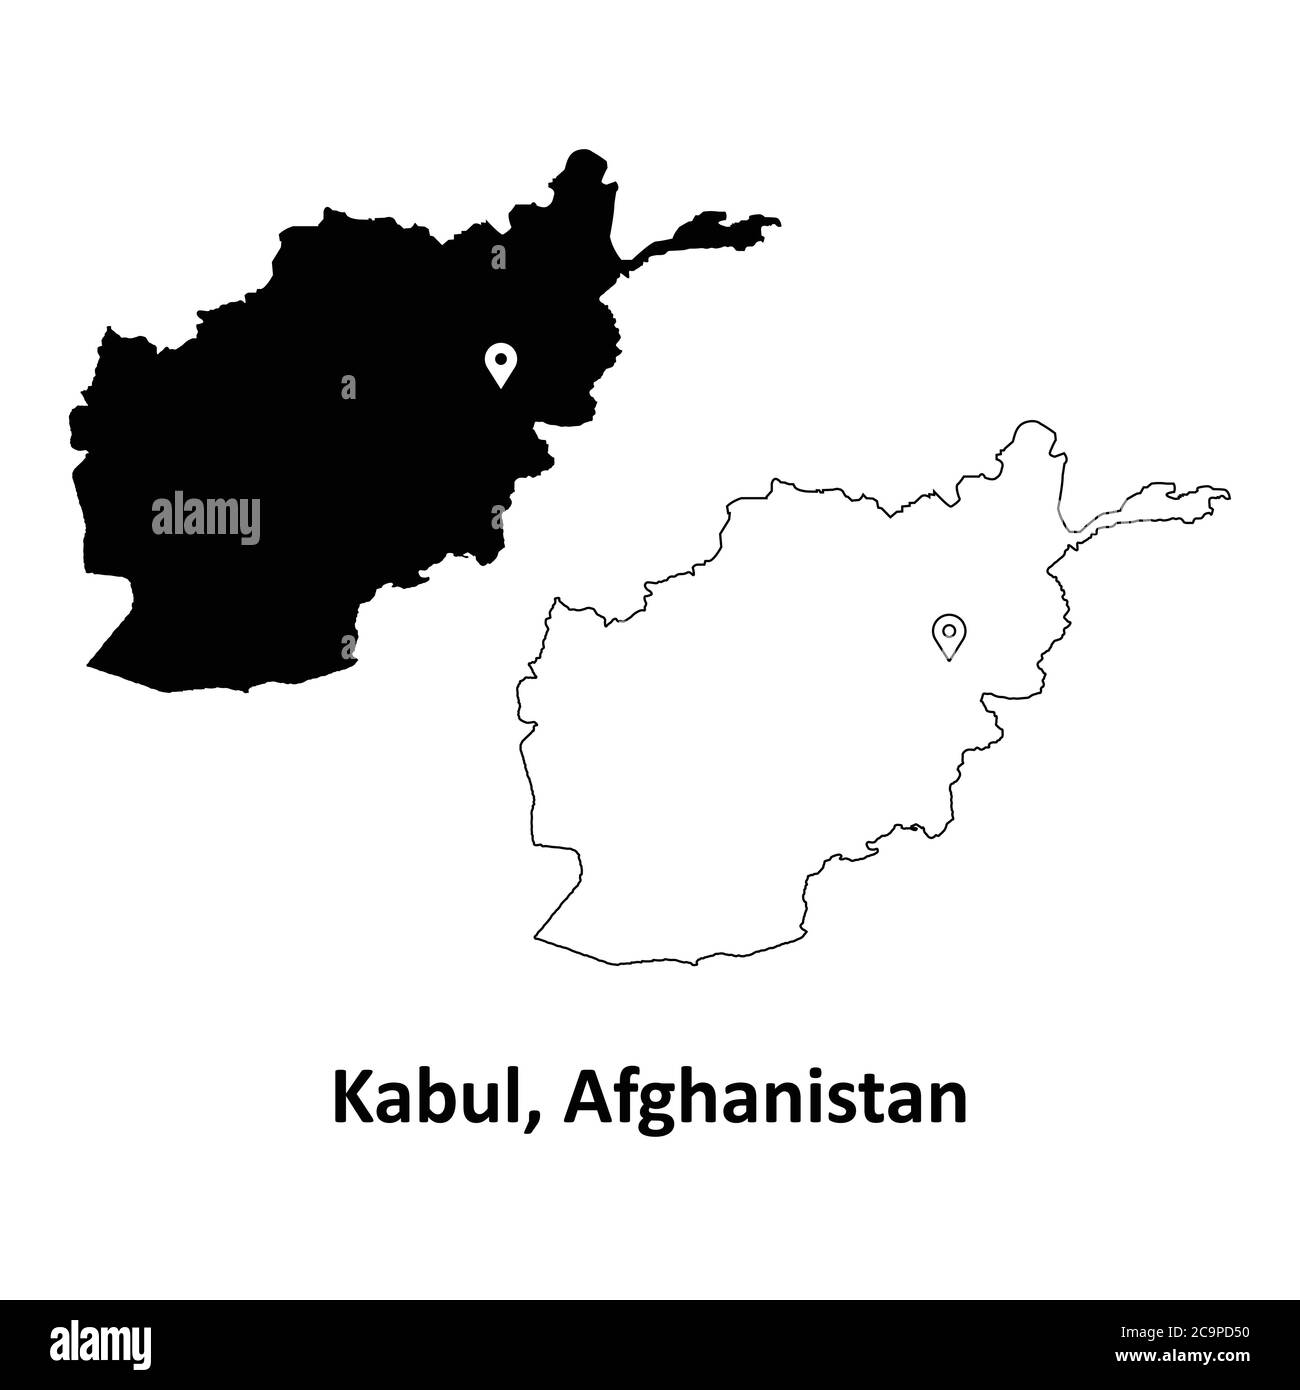 Kaboul Afghanistan. Carte détaillée du pays avec code PIN Capital City Location. Cartes silhouettes et vectorielles noires isolées sur fond blanc. Vecteur EPS Illustration de Vecteur